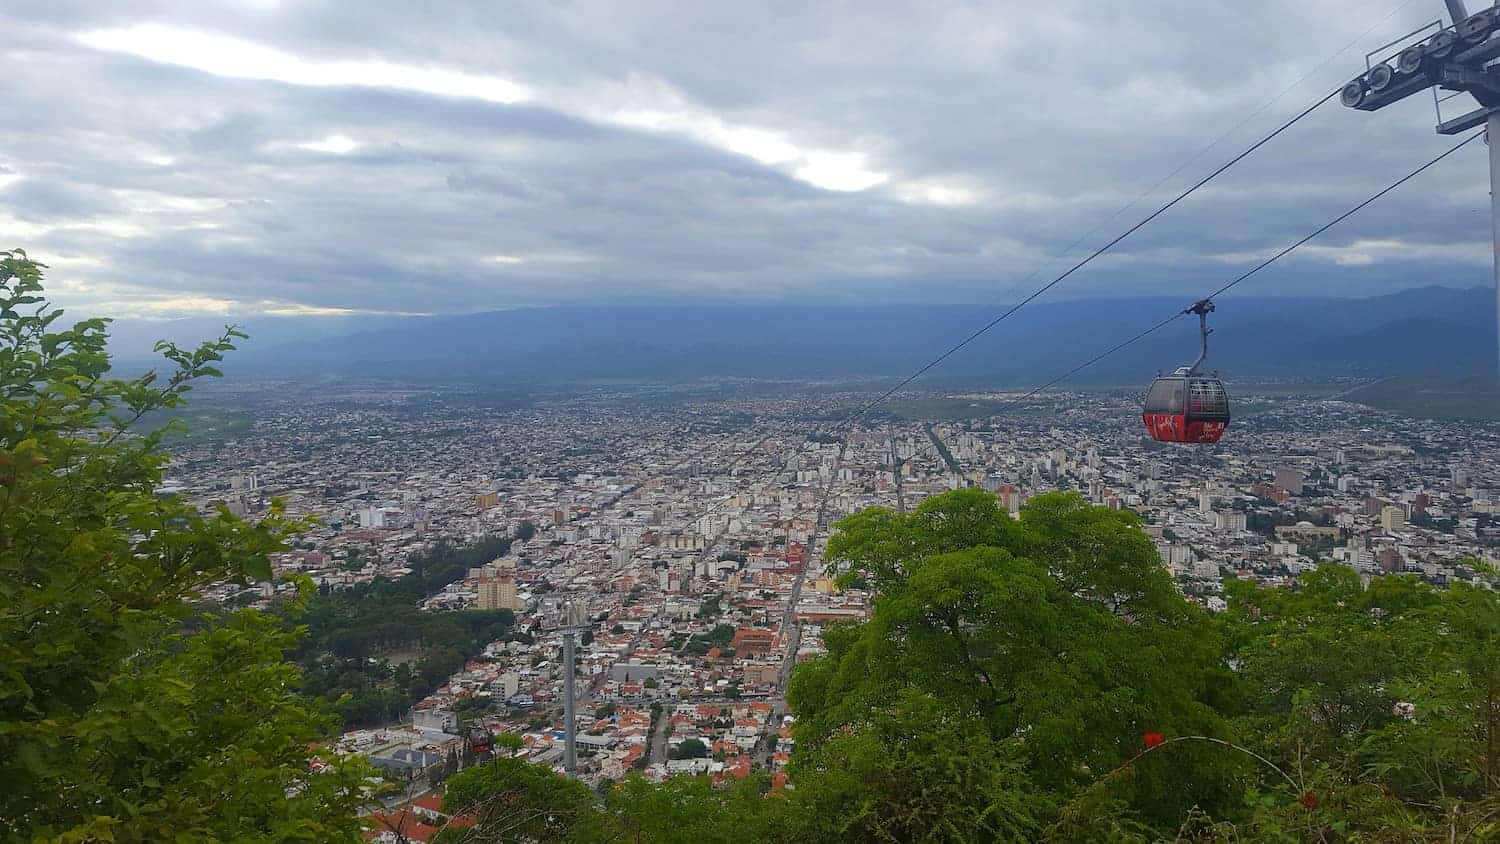 Cerro San Bernardo